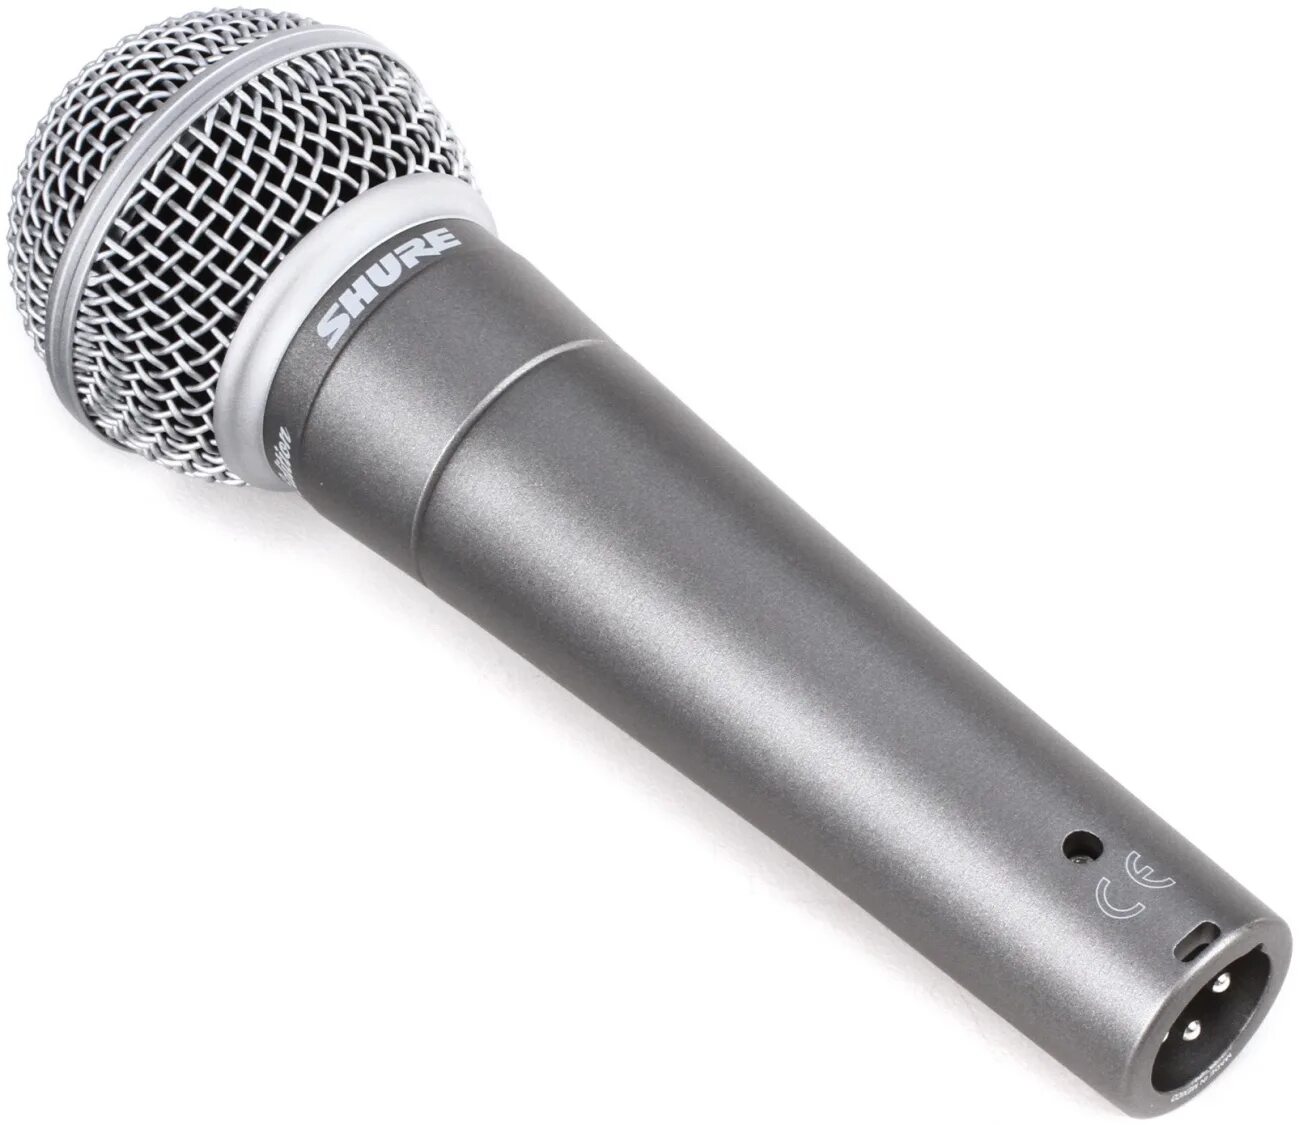 Вокальный микрофон Shure sm58. Динамический микрофон Shure sm58. Вокальный динамический микрофон sm58 Shure. Микрофон Shure 58. Микрофон шуре купить